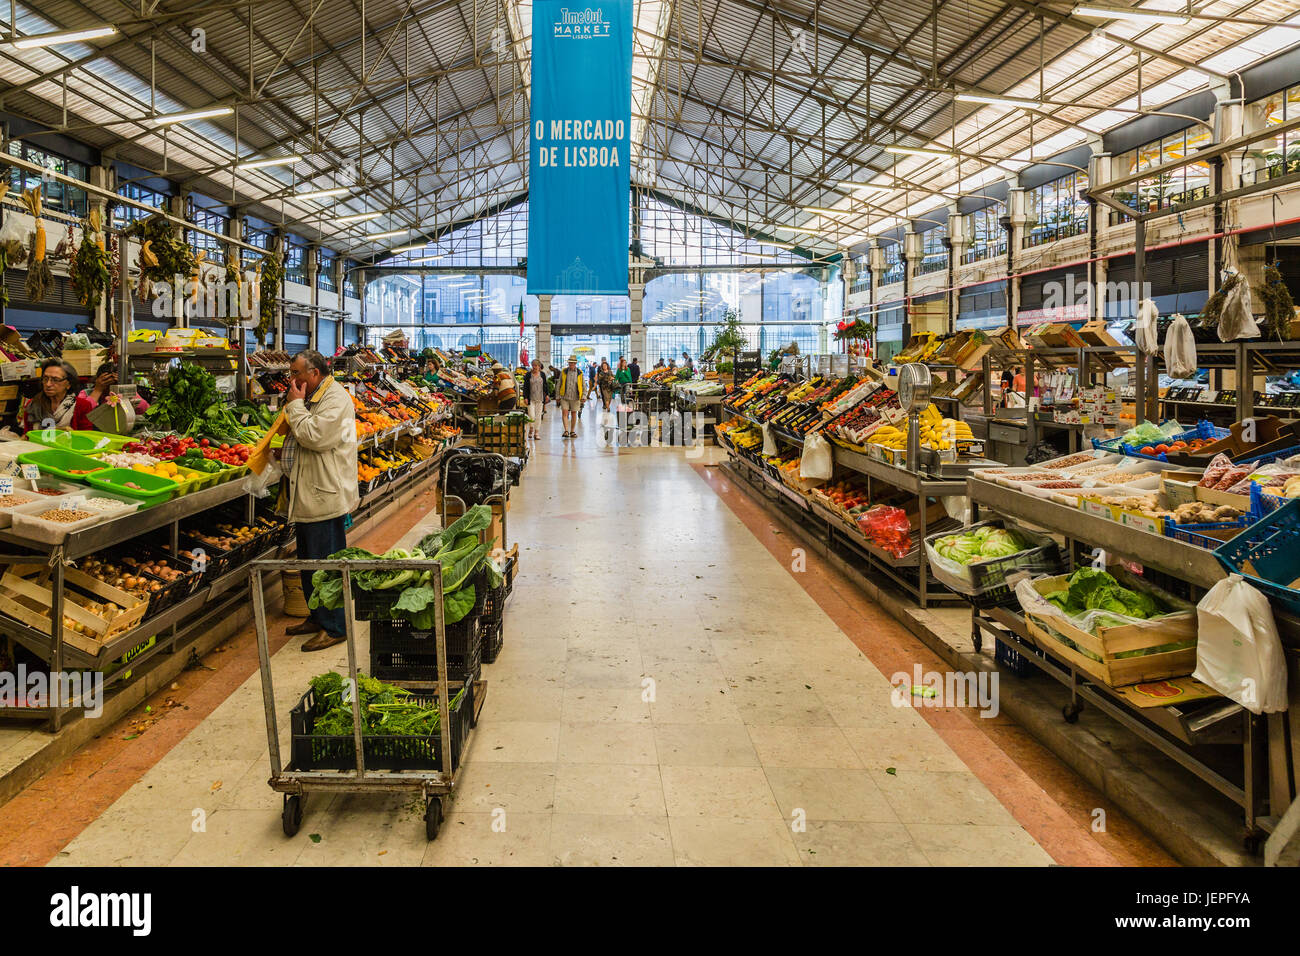 Lissabon, Portugal - 20. Mai 2017: Stadtmarkt mit Obst und Gemüse in Lissabon, Portugal Stockfoto